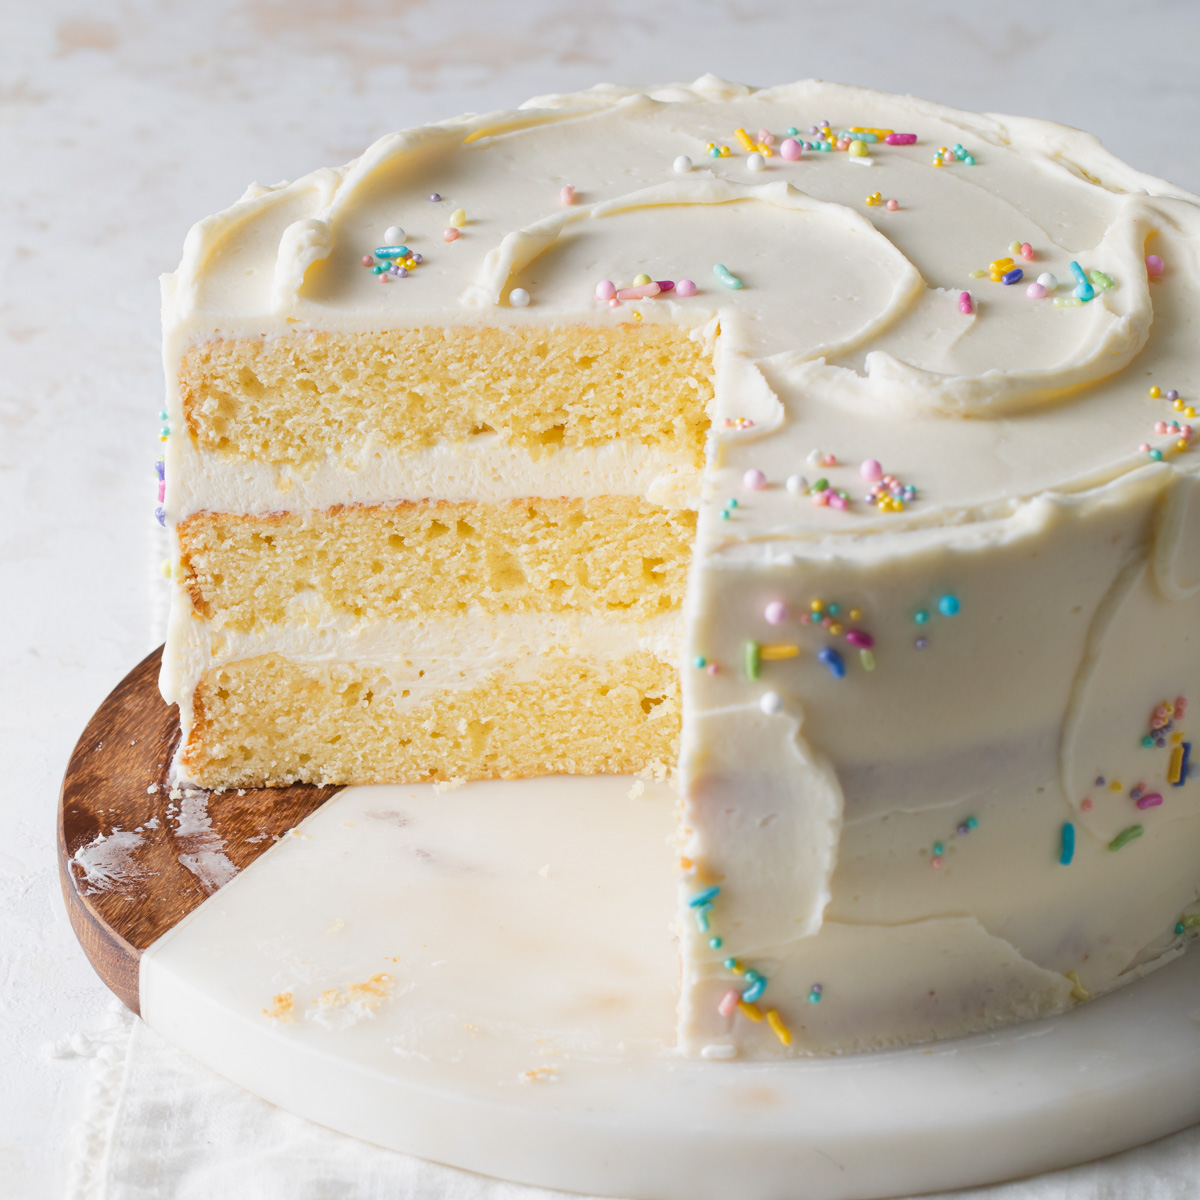 David's Yellow Cake Recipe